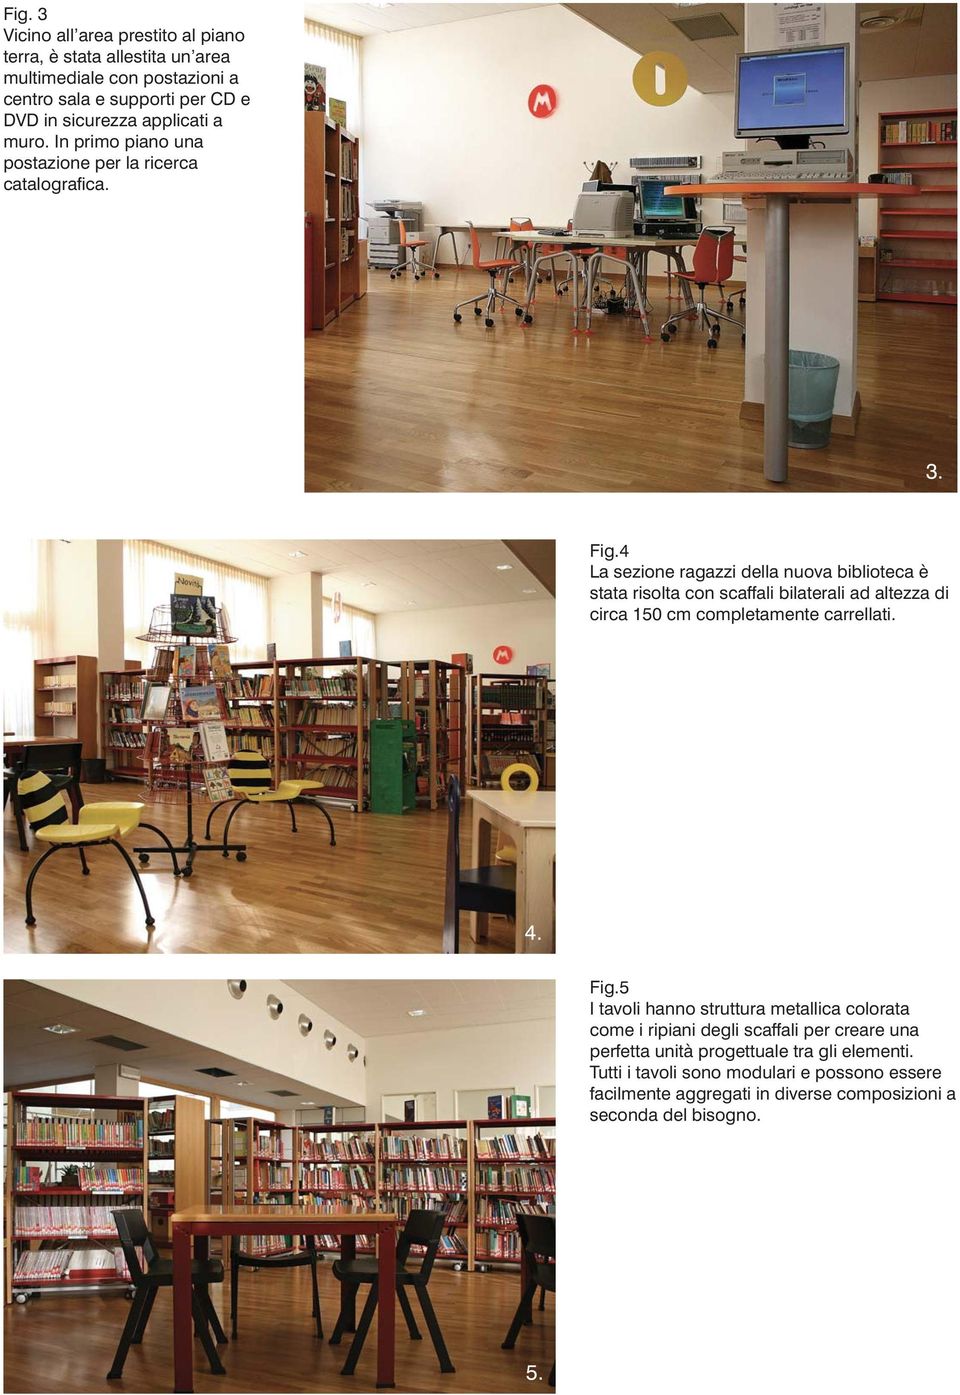 4 La sezione ragazzi della nuova biblioteca è stata risolta con scaffali bilaterali ad altezza di circa 150 cm completamente carrellati. 4. Fig.